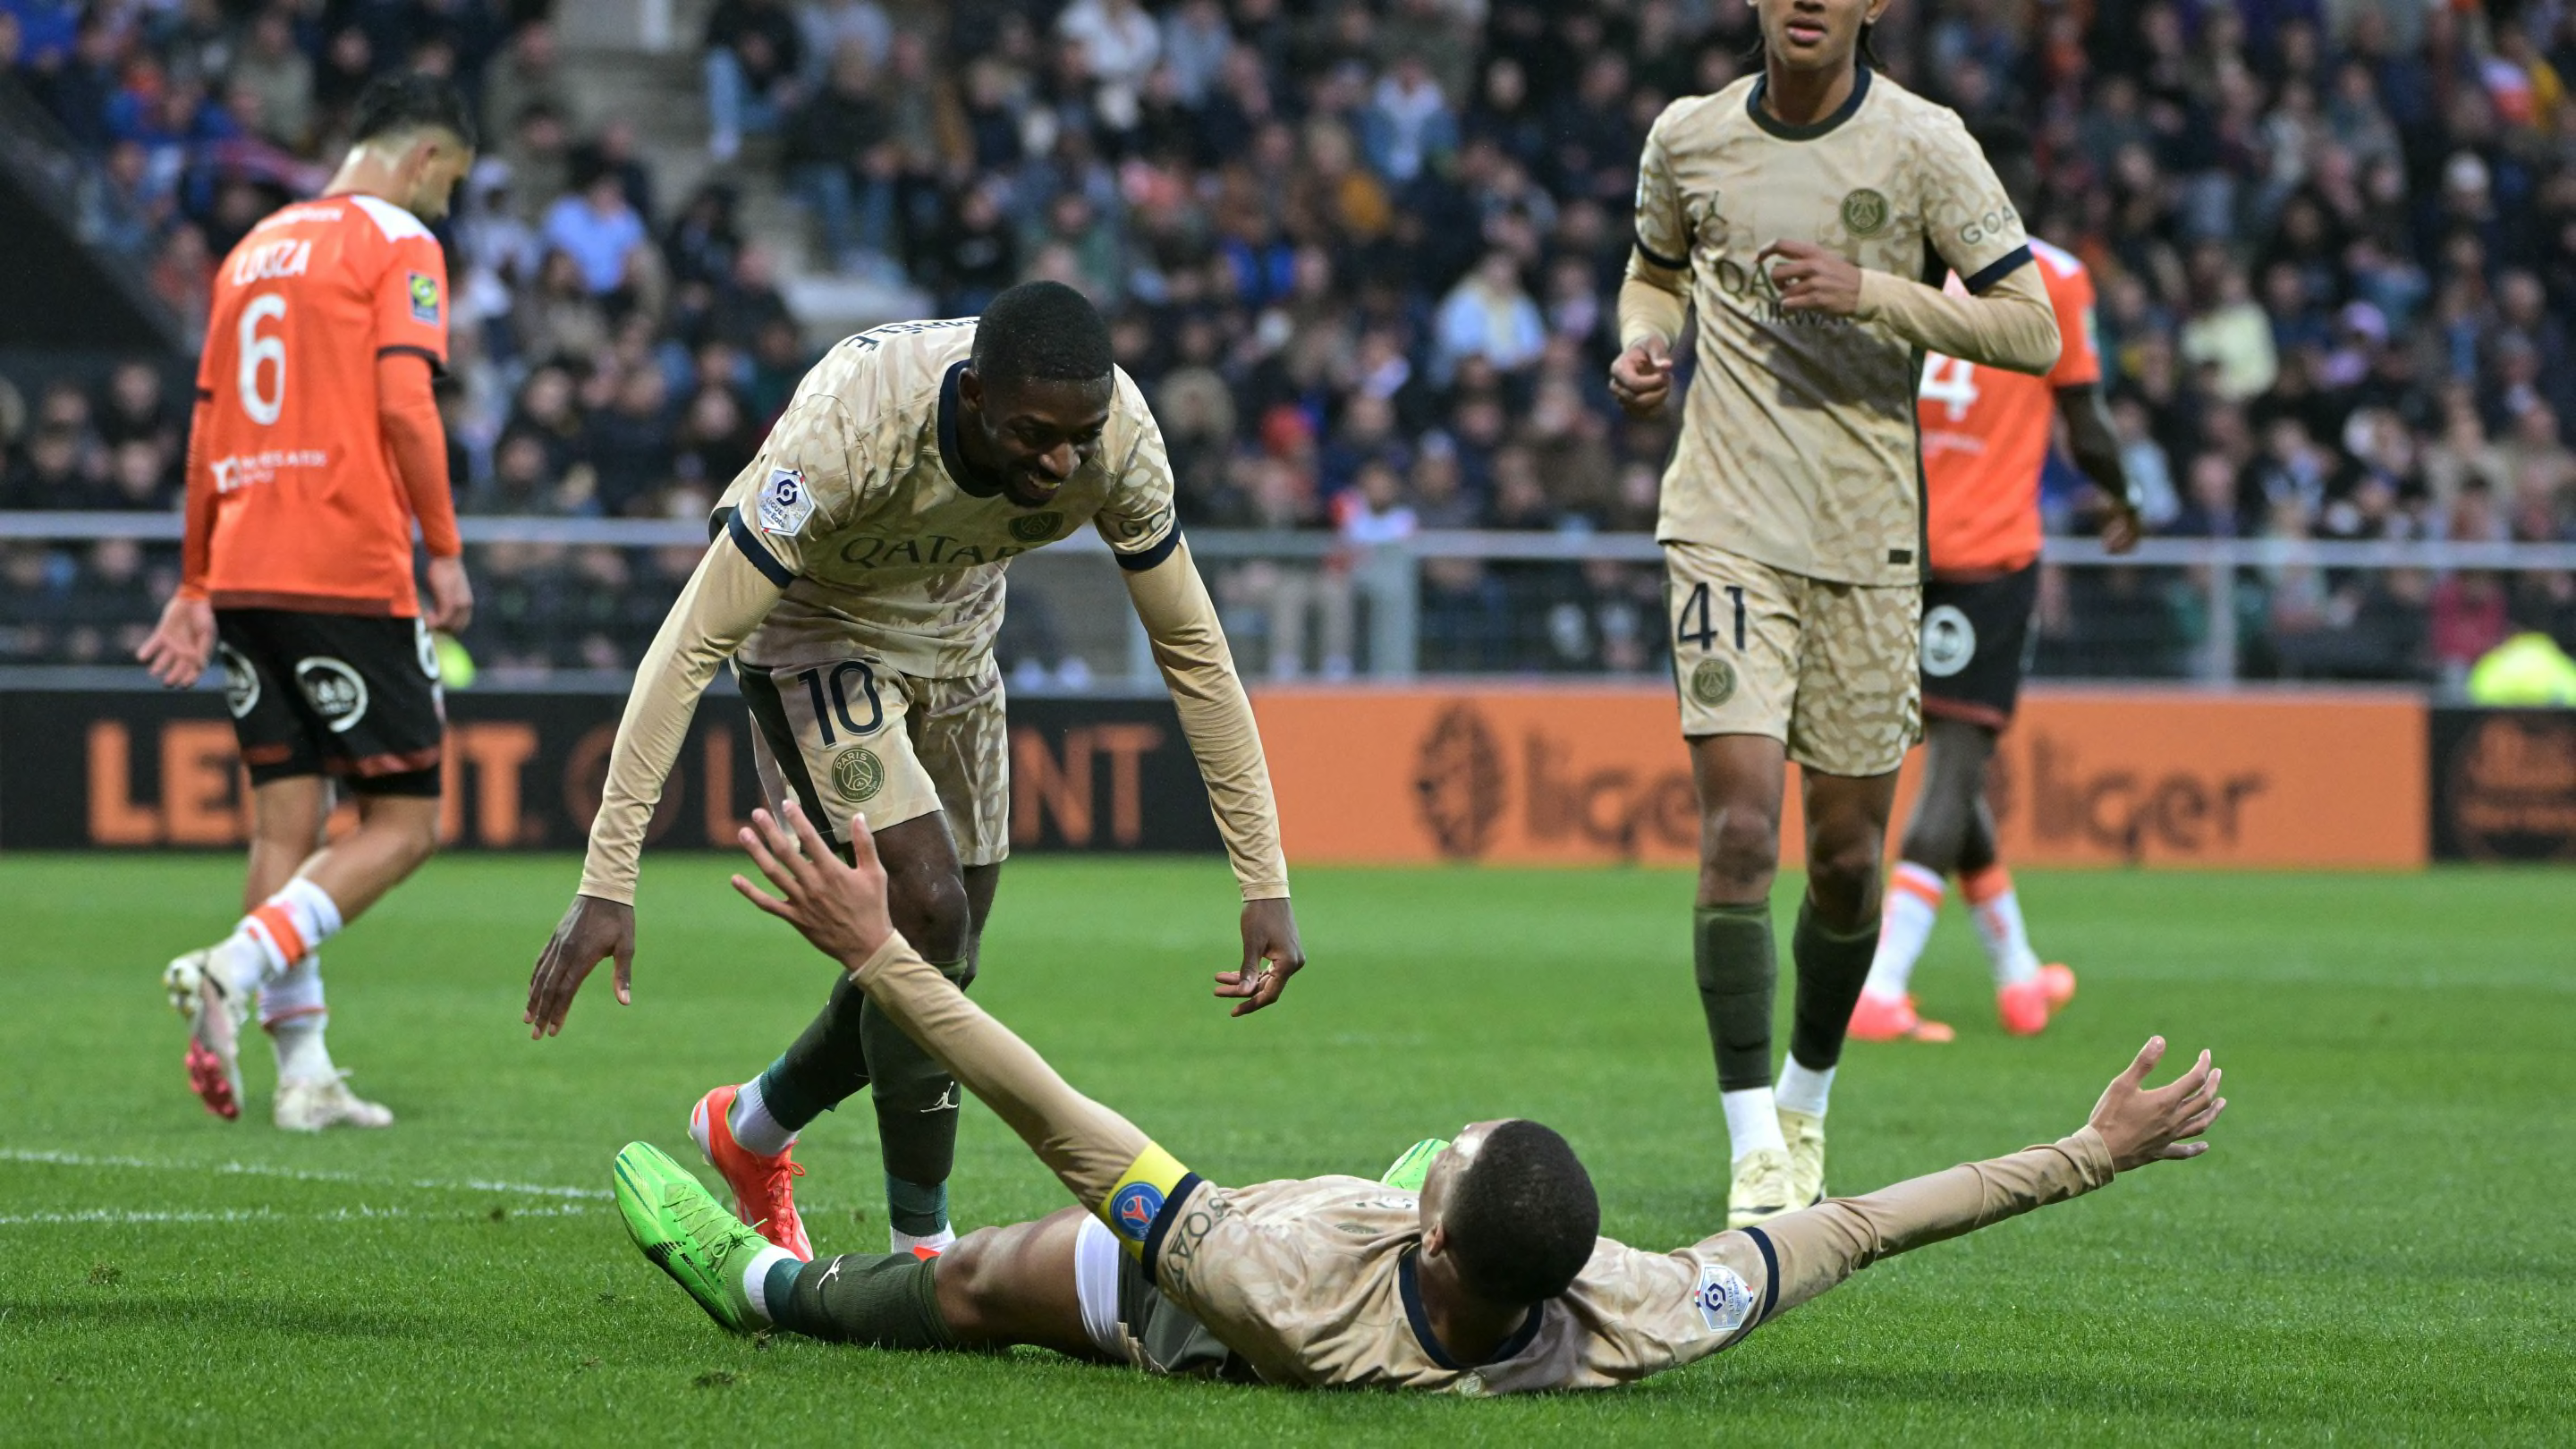 FC Lorient - PSG (1-4) : Les notes des Parisiens qui foncent vers un nouveau titre de champions en Ligue 1